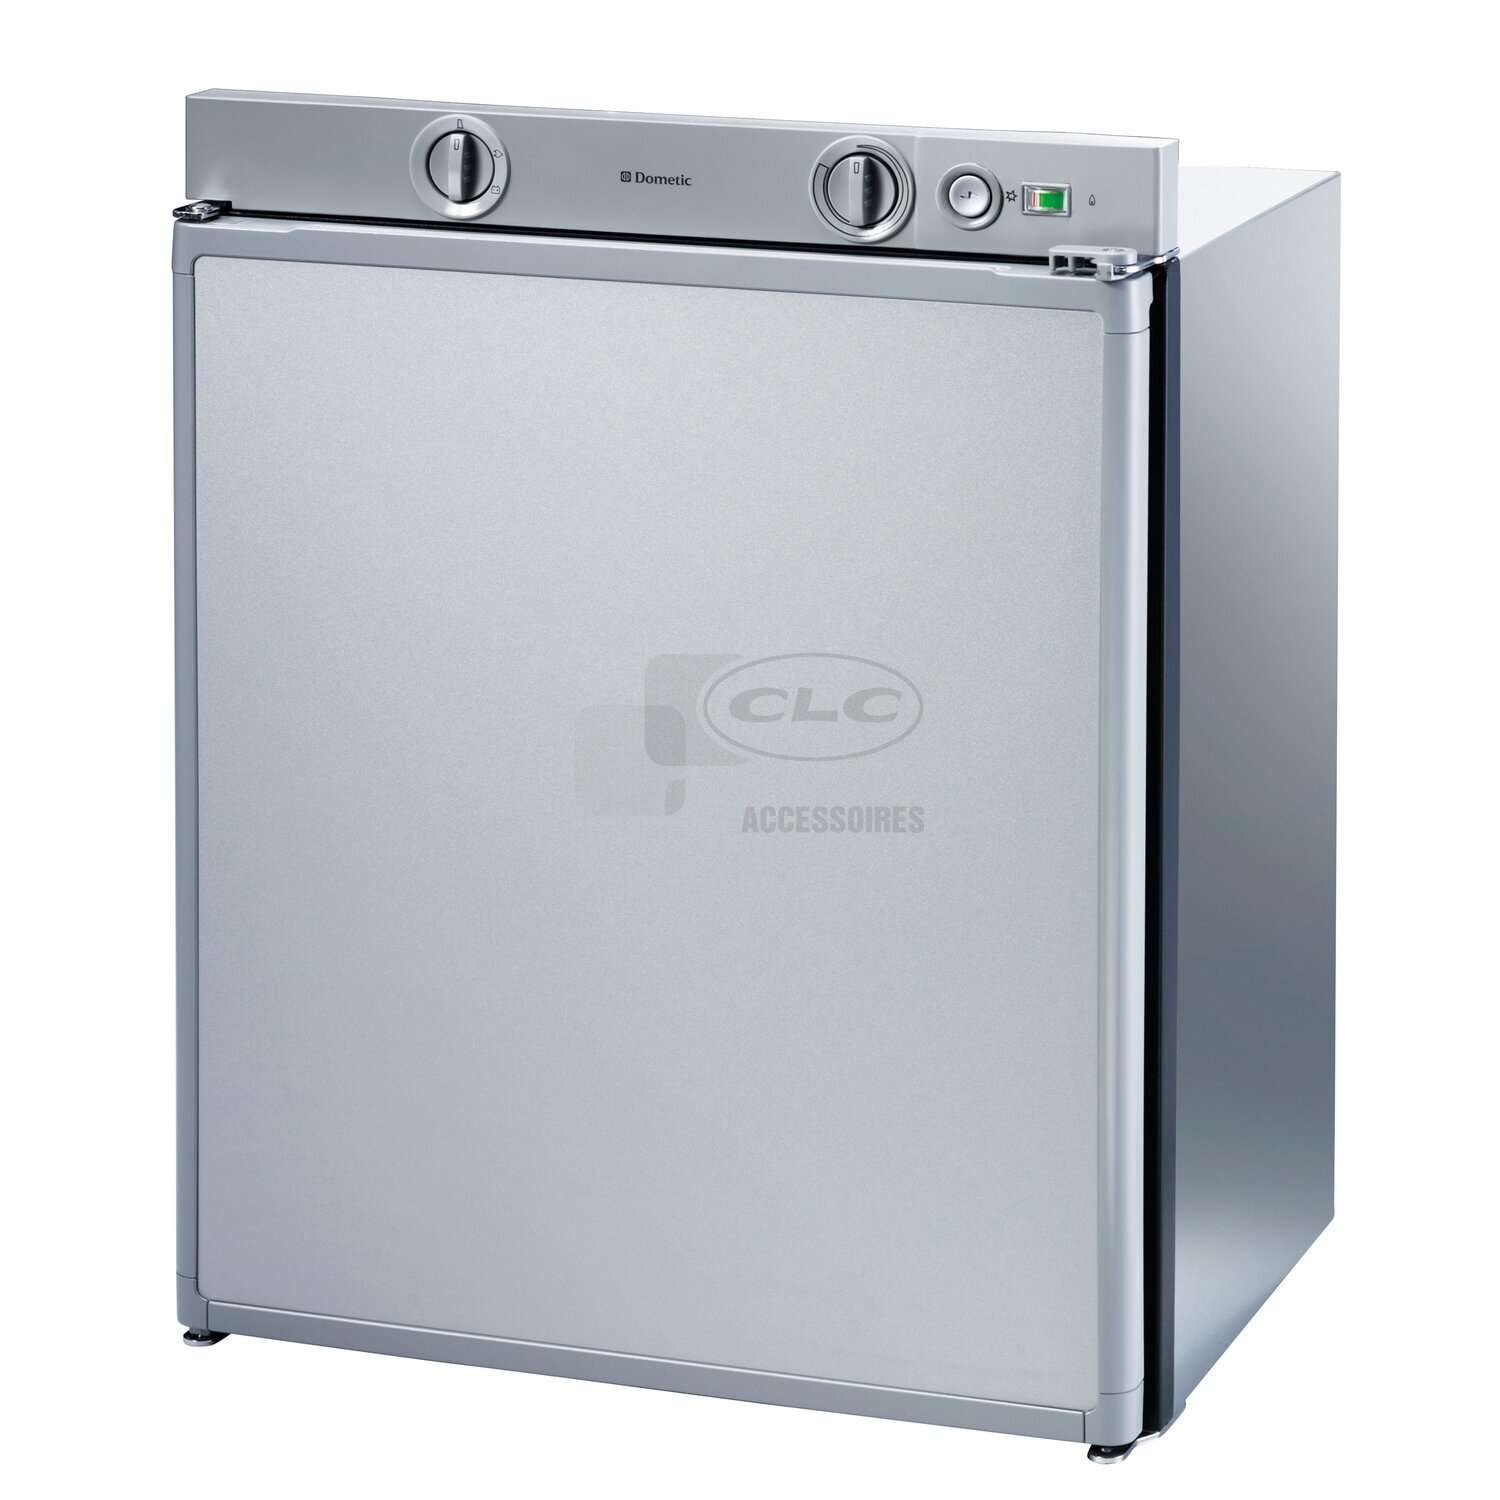 Comment choisir son réfrigérateur encastrable ?